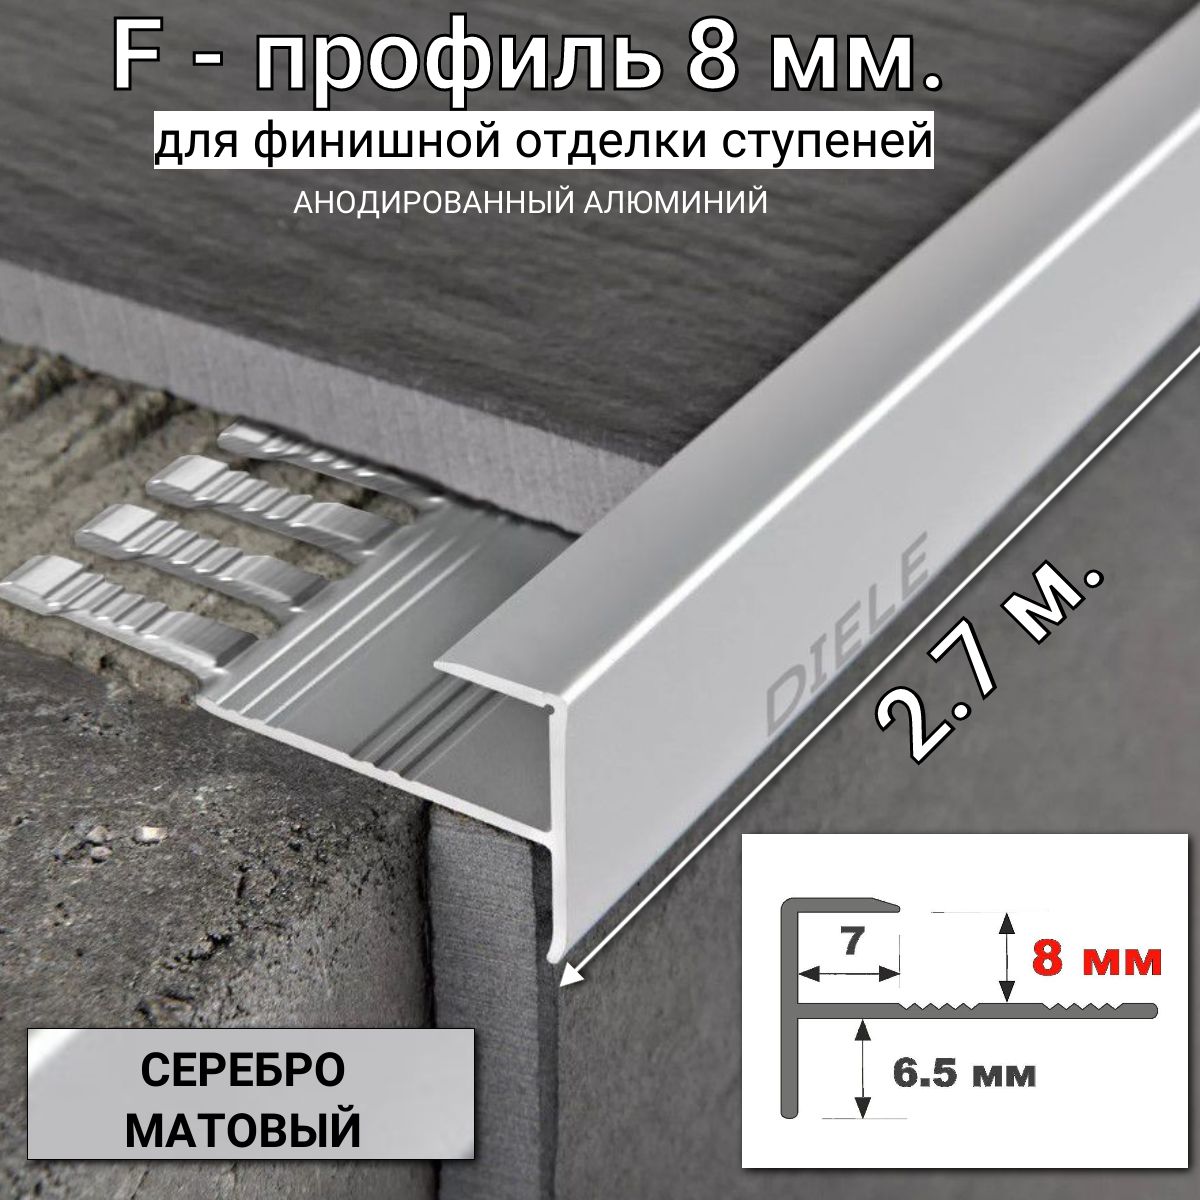 АлюминиевыйF-образныйгибкийпрофильдляступеней/плиткиПФ-8ммсеребро/матовый2,7м.